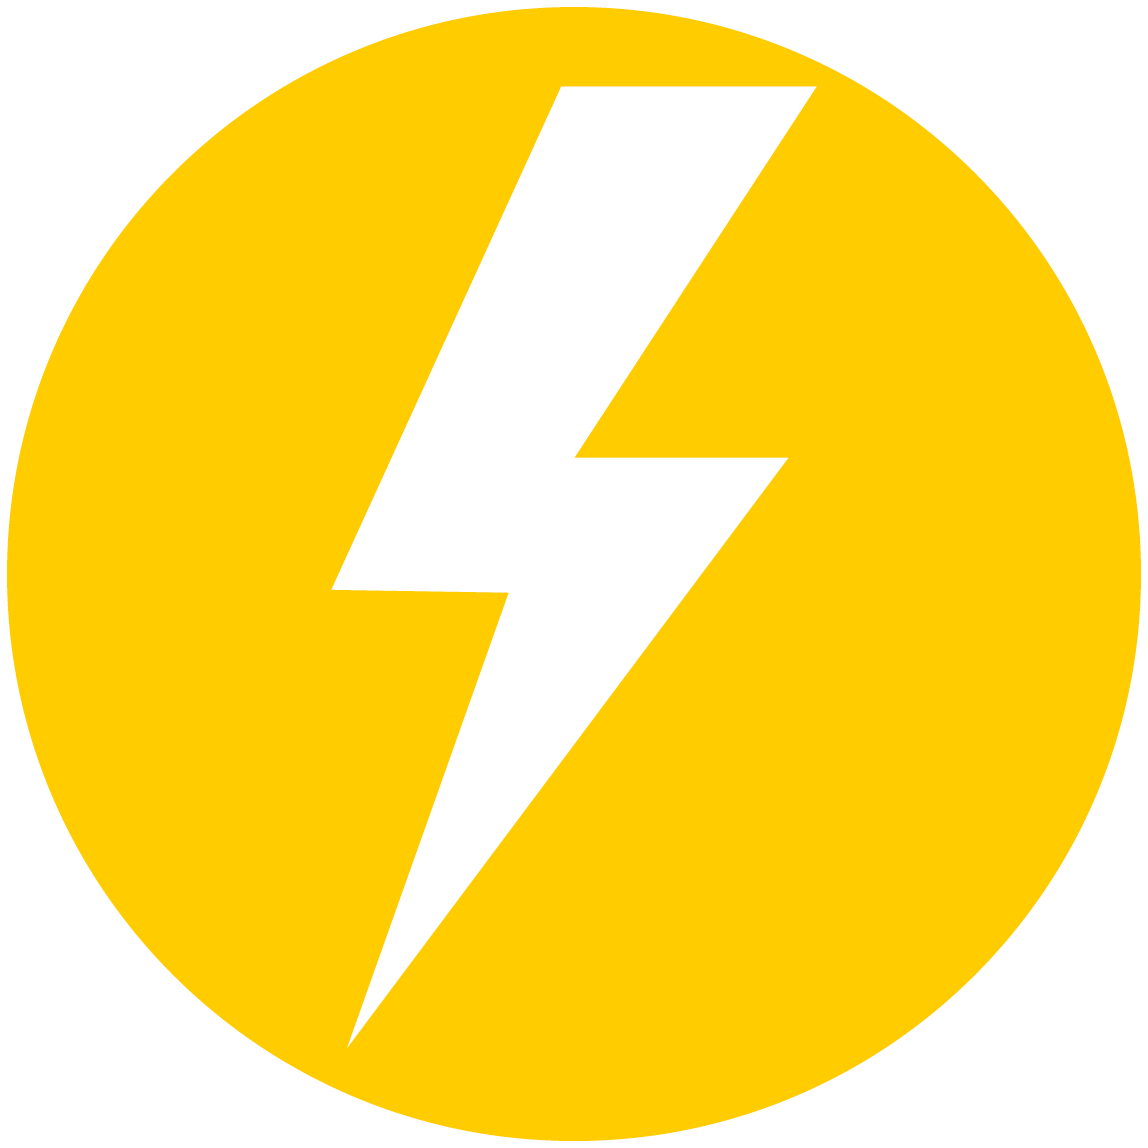 Masinotek energialaitos ikoni keltaisella pohjalla.